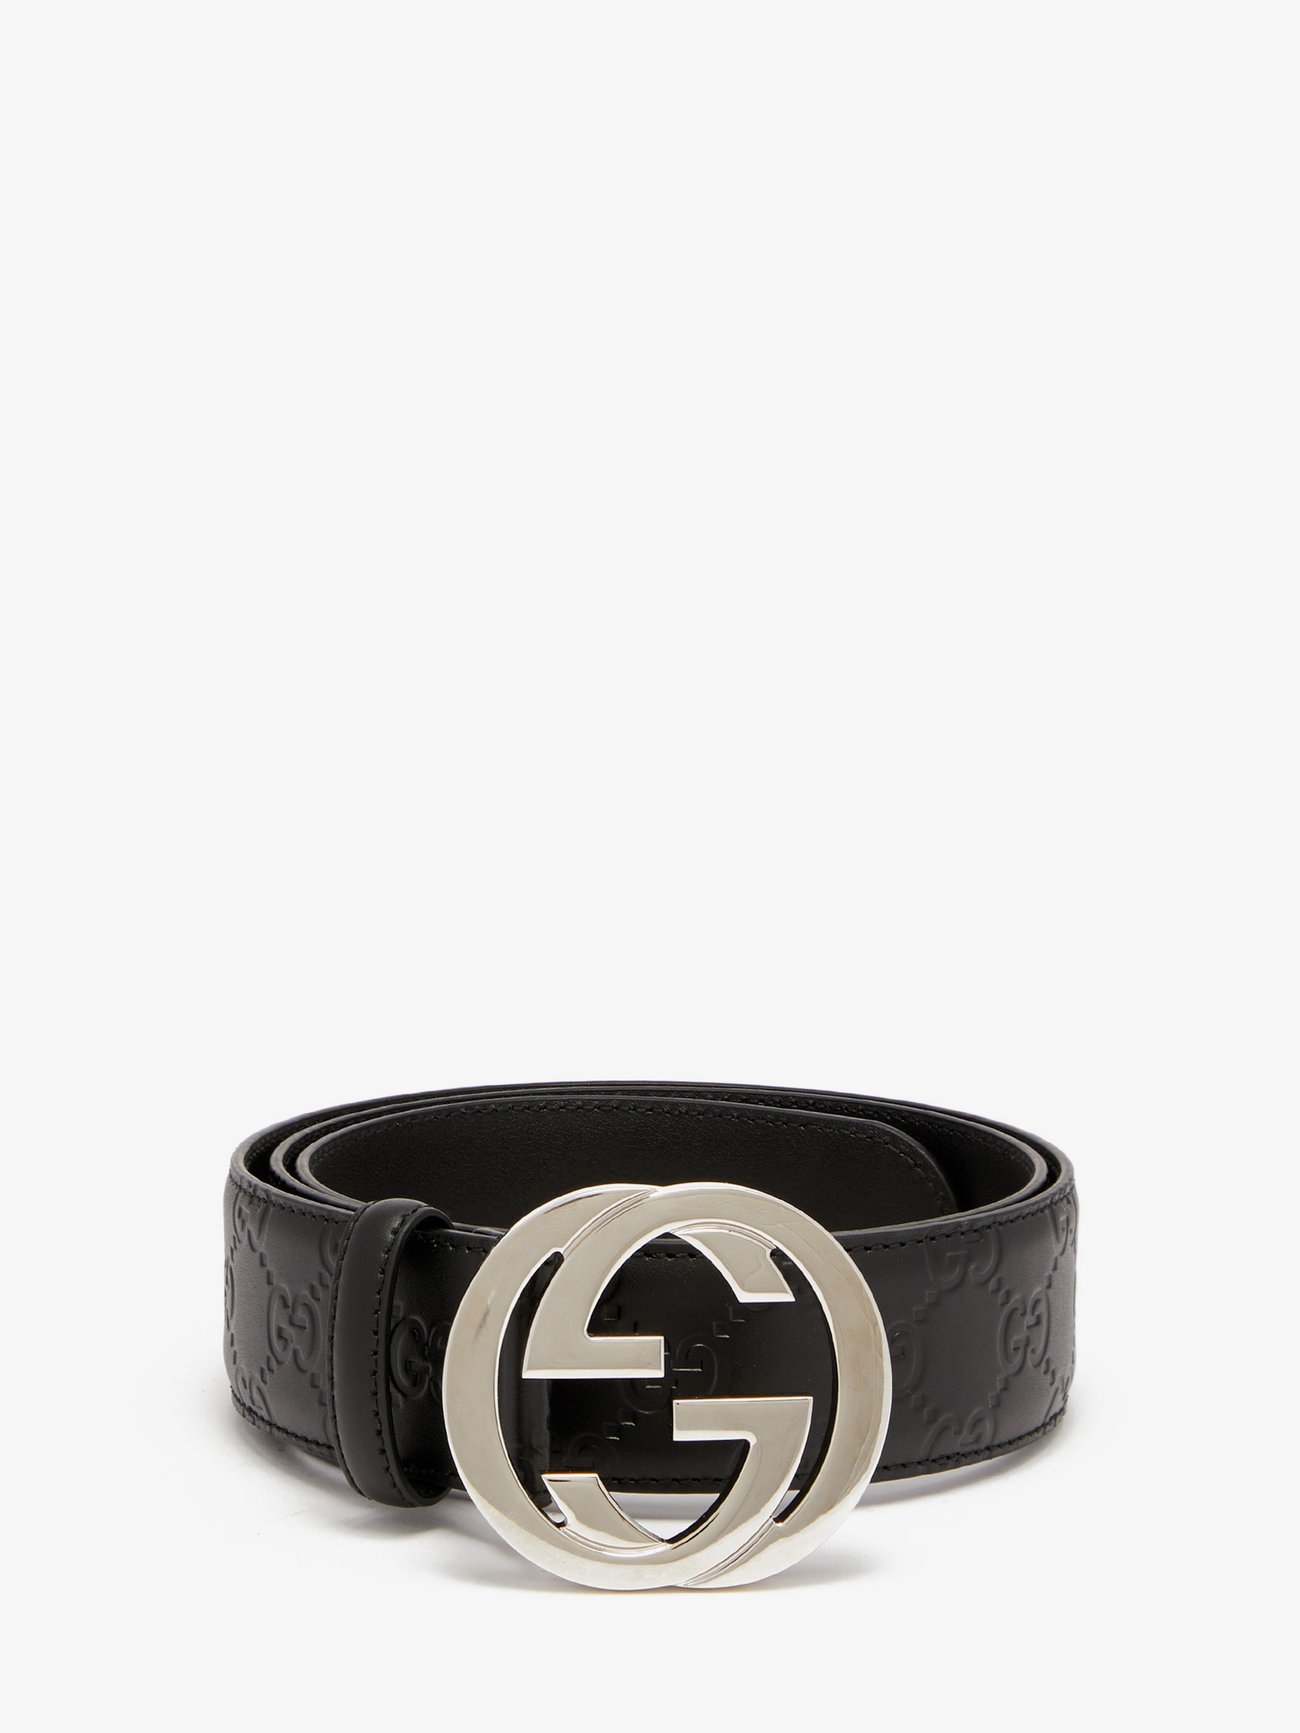 Bot Voorzien stropdas Black Signature GG-logo leather belt | Gucci | MATCHESFASHION US